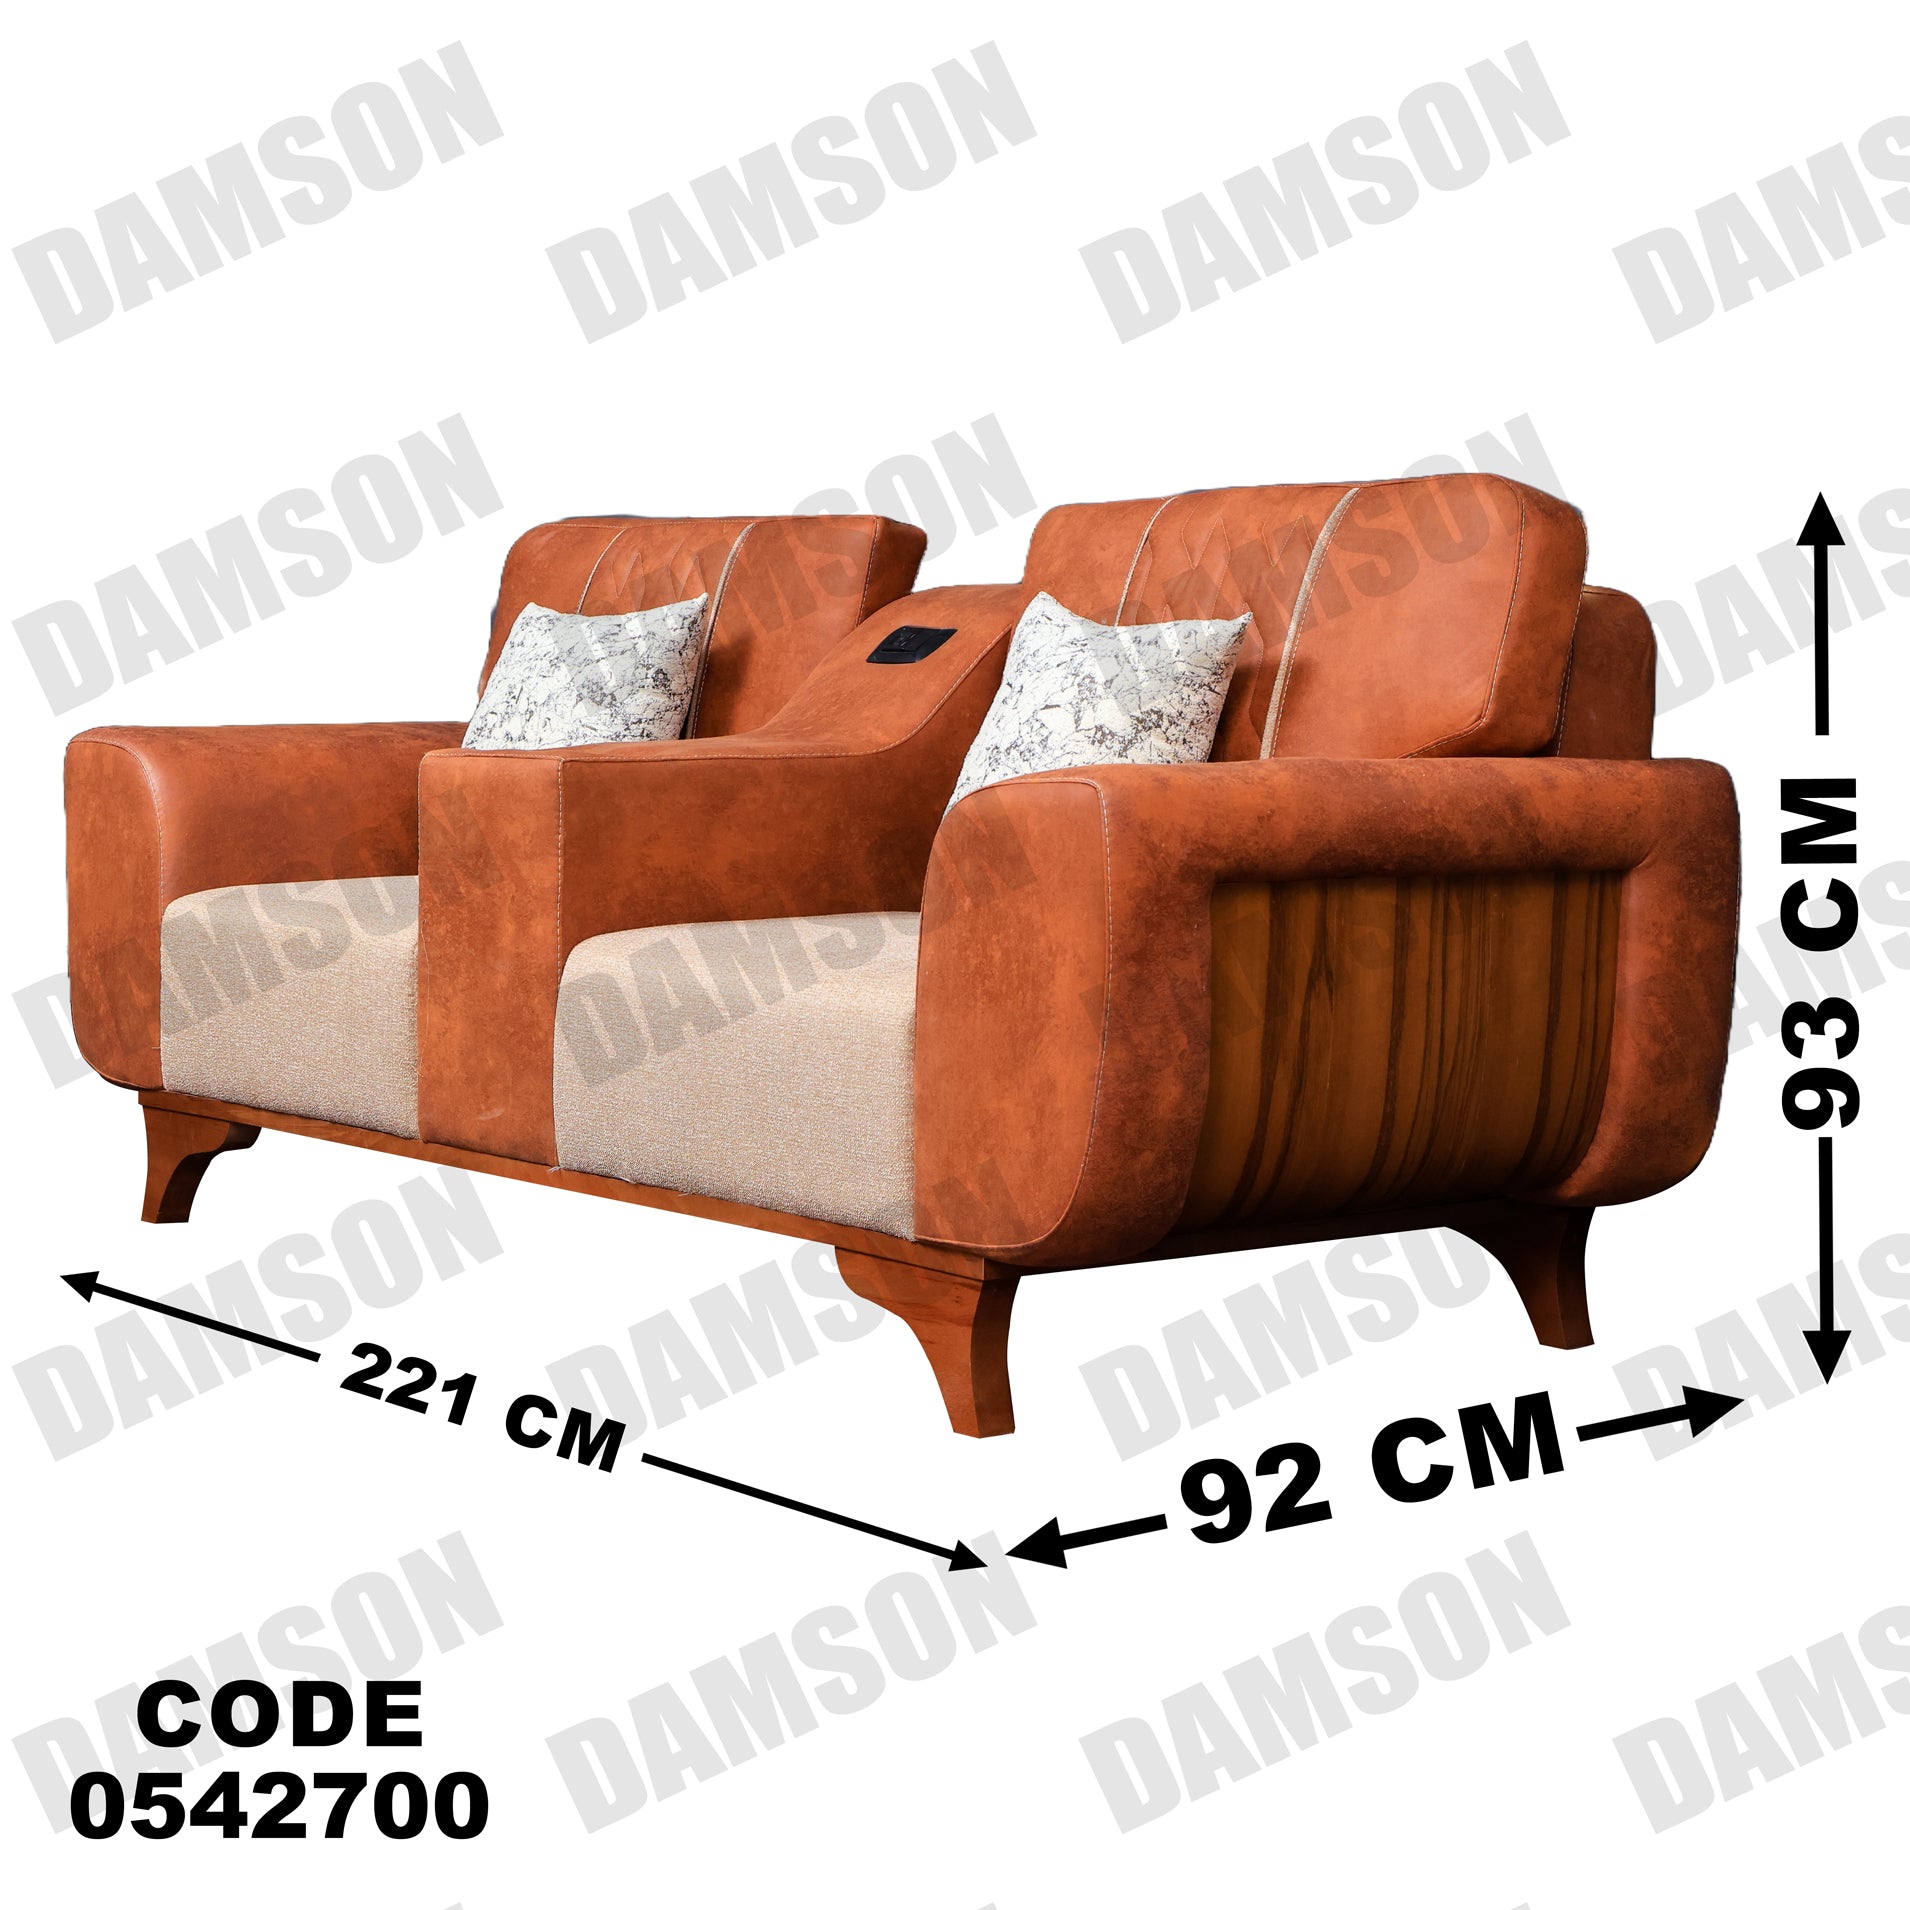 انترية 427 - Damson Furnitureانترية 427